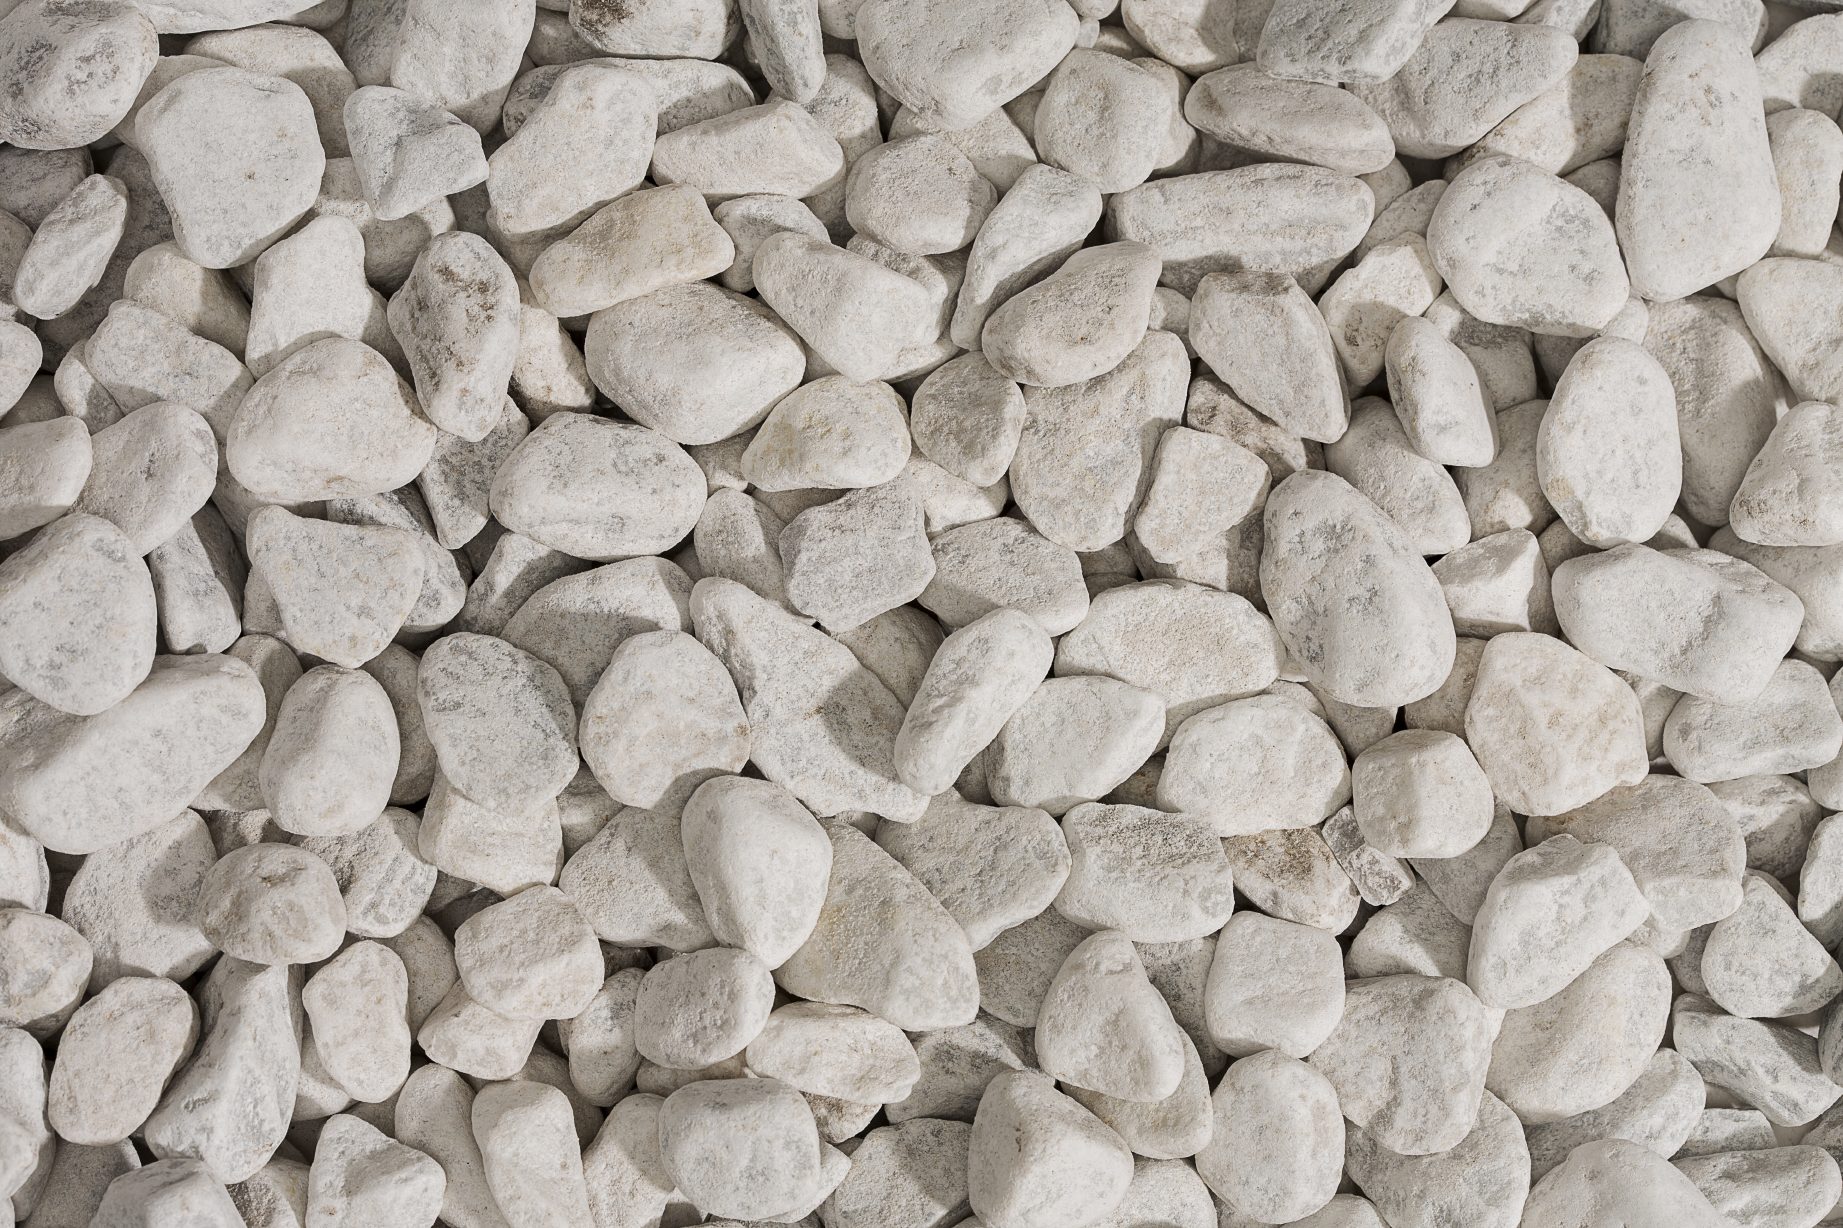 Carrara keien kopen, formaat 15 tot 25 mm - Jatu.be grindwebshop